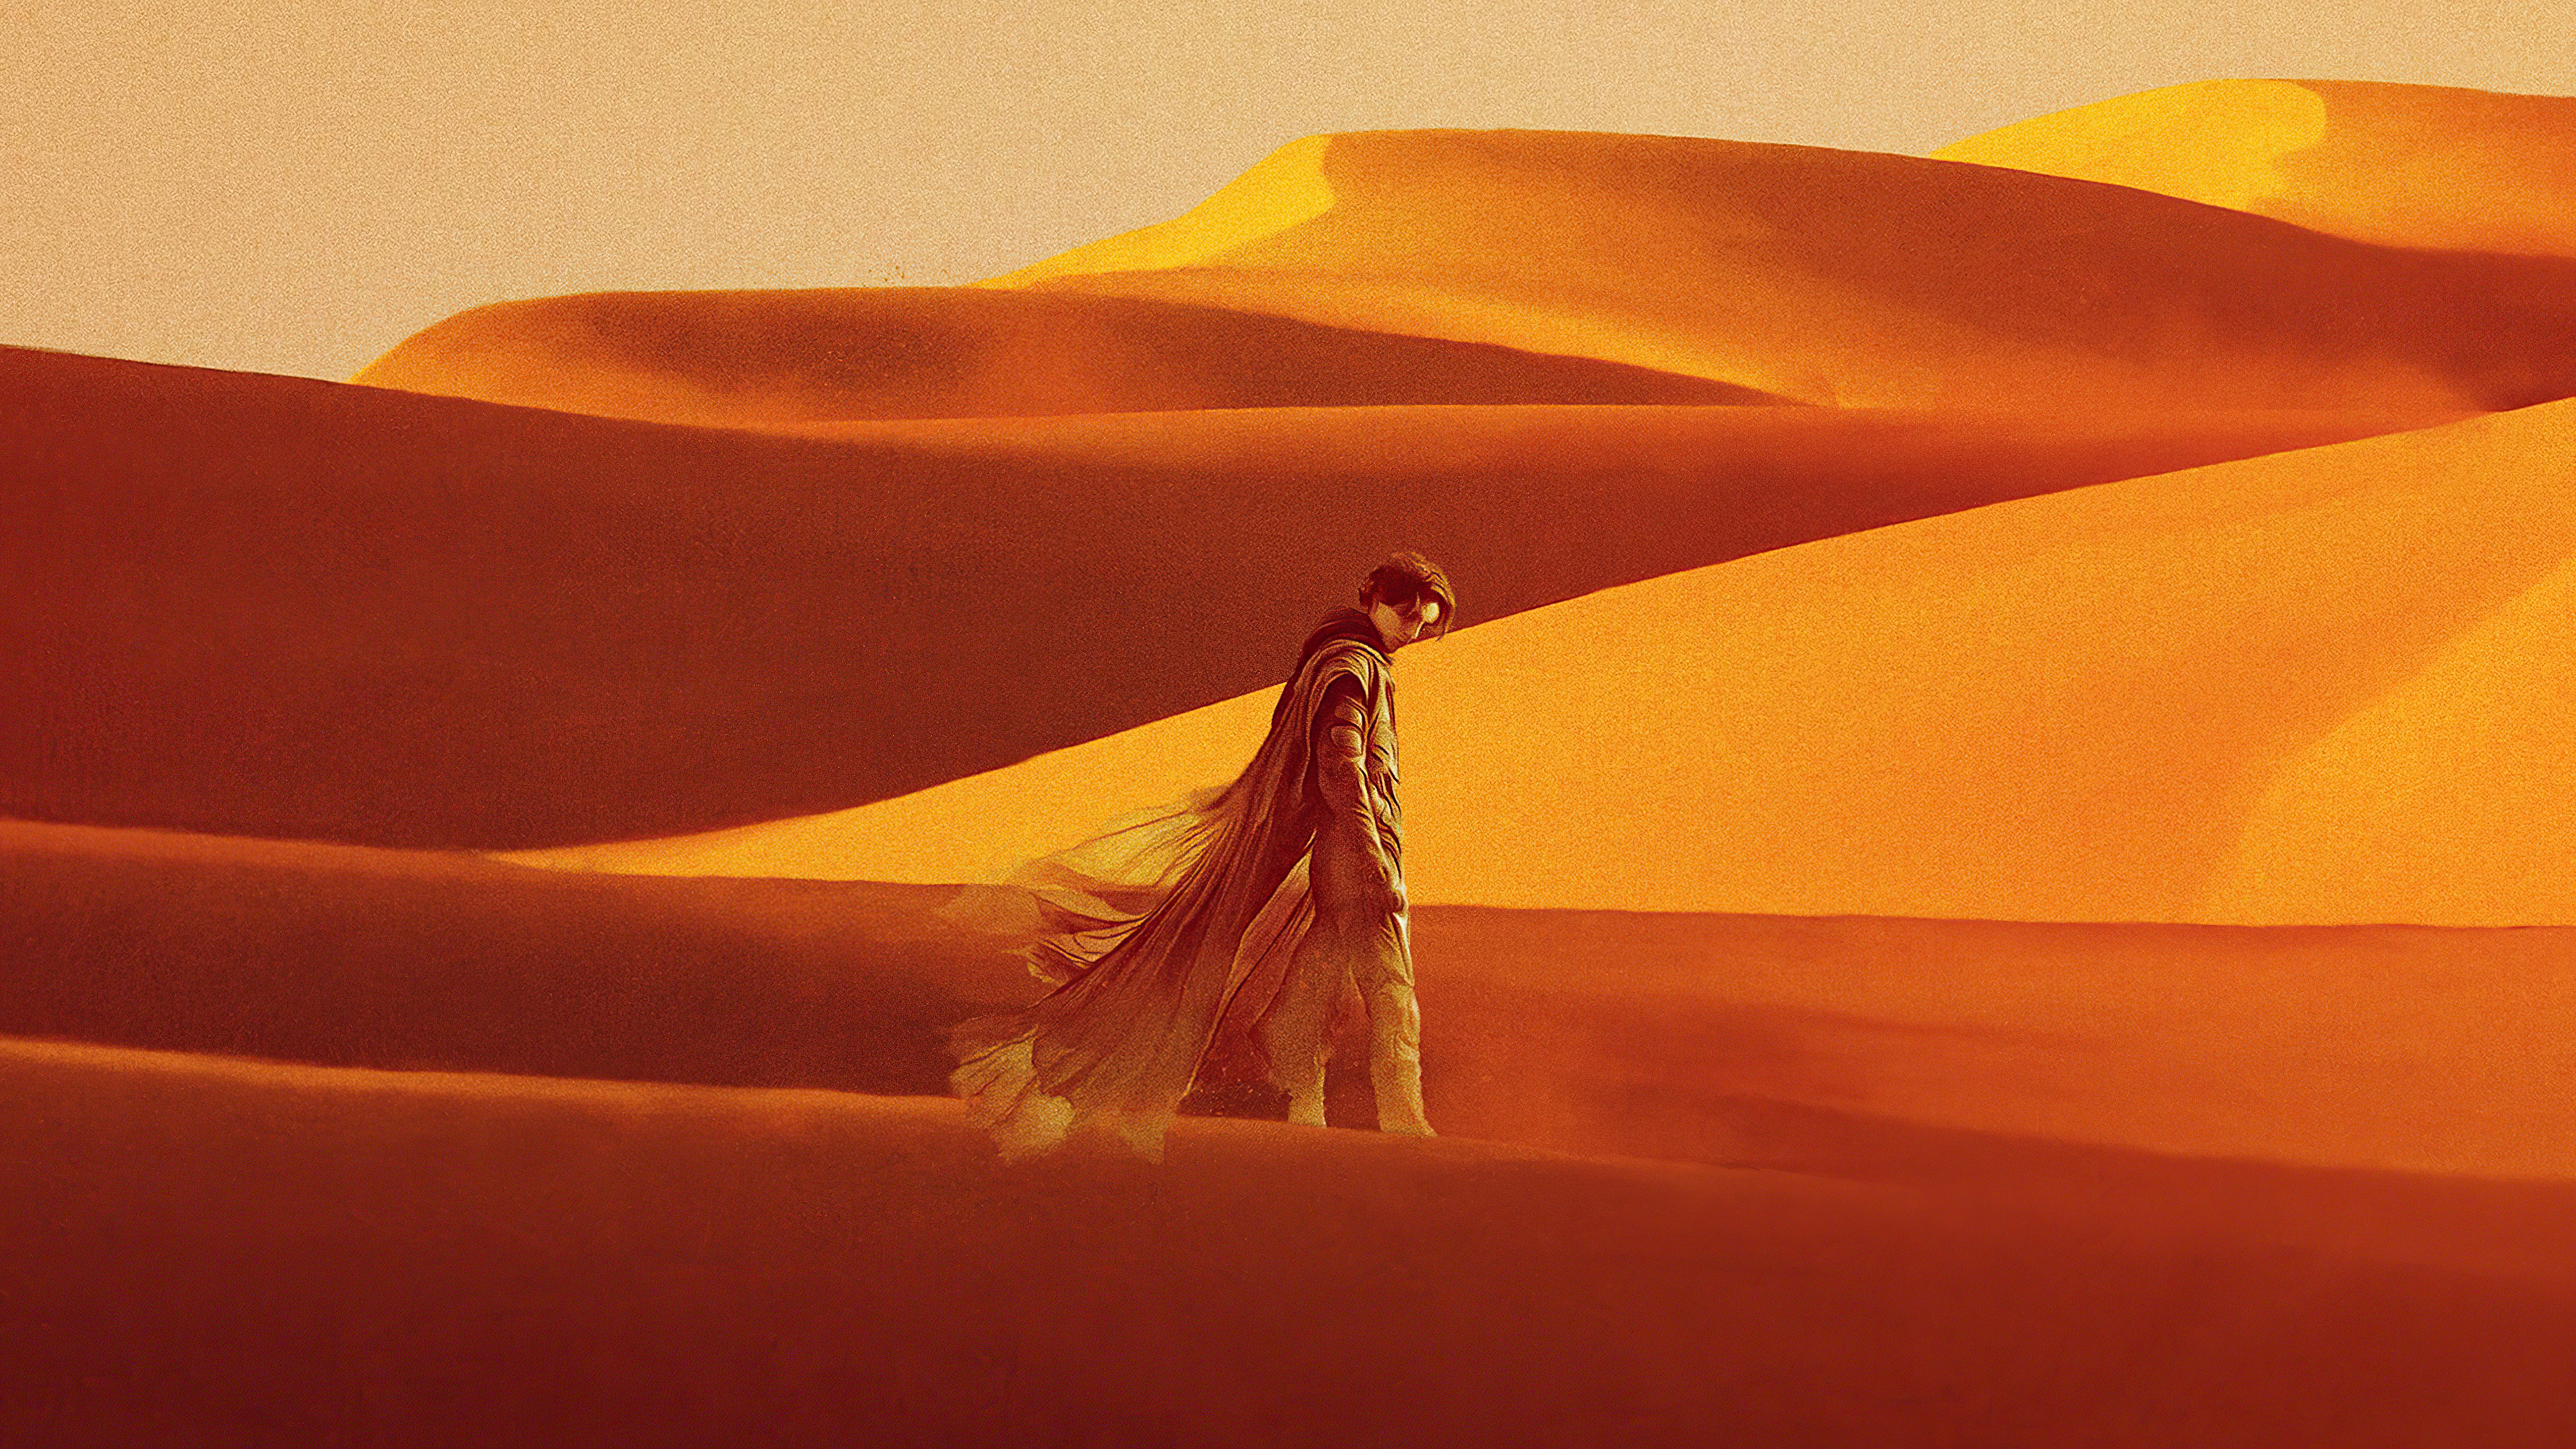 Timothee Chalamet in Dune Wallpaper 4k Ultra HD